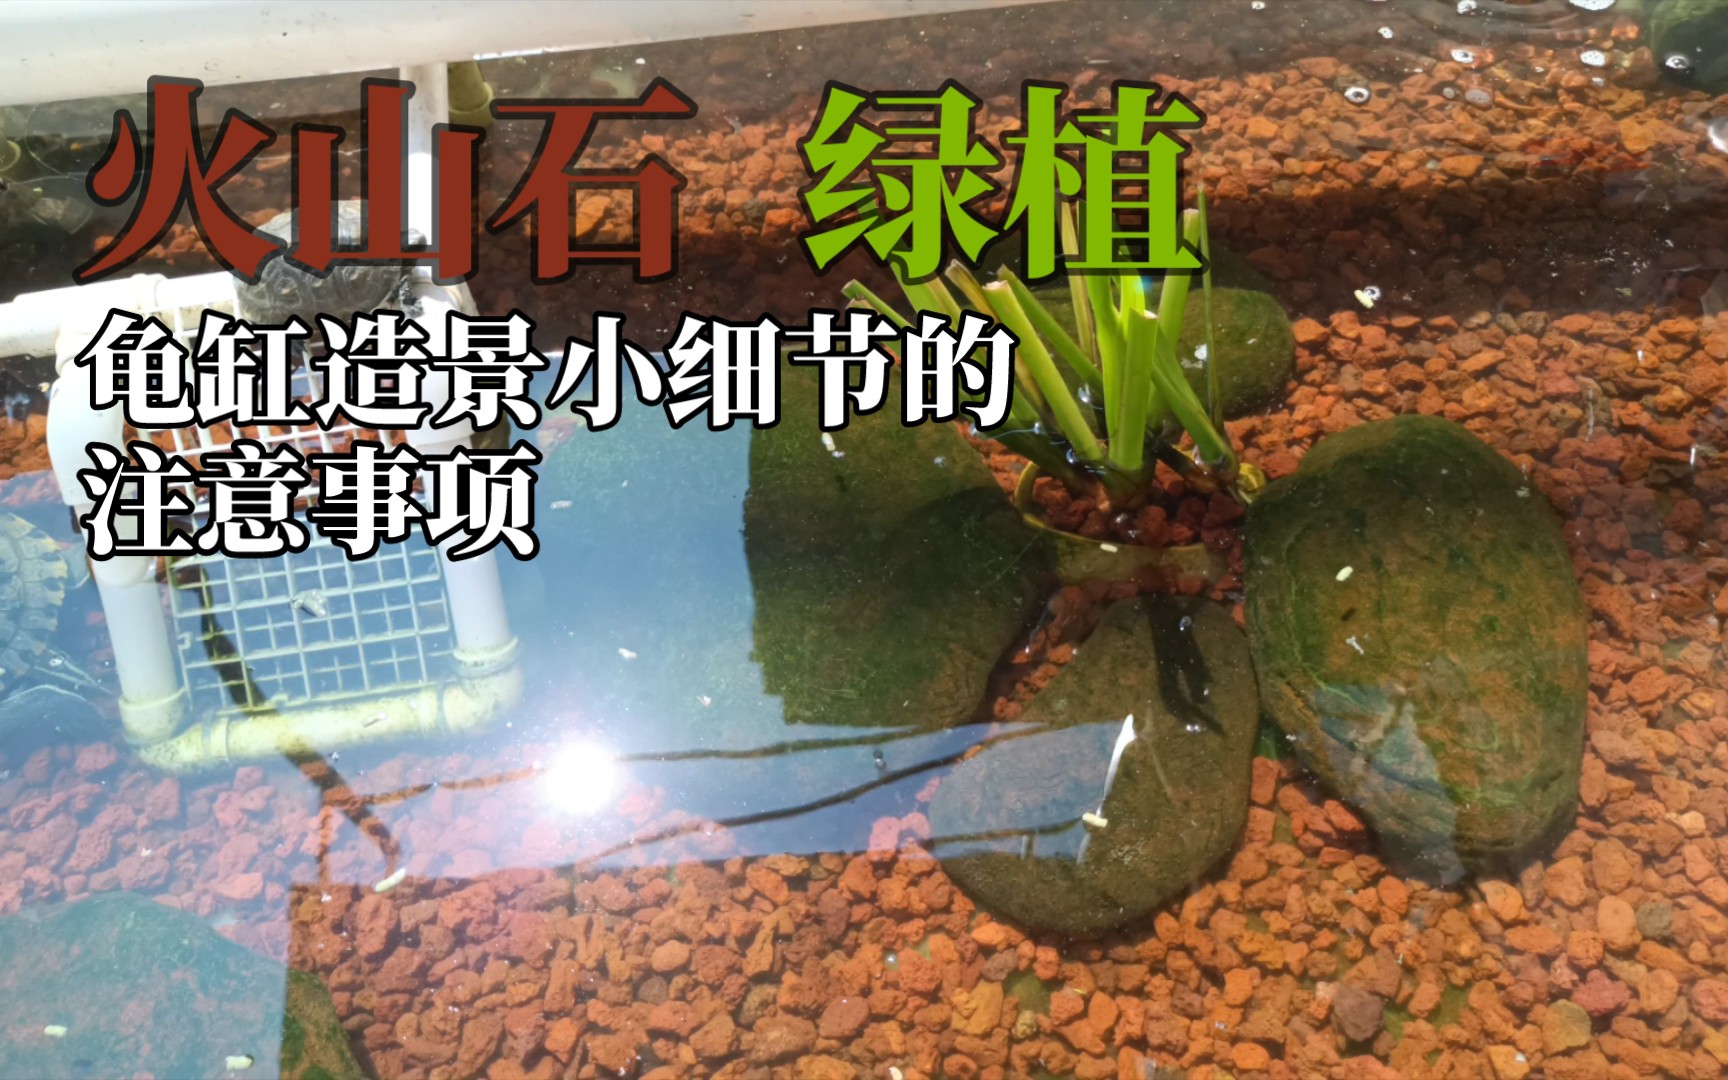 龟产蛋池网格乌龟晒台diy蛋龟水龟产蛋池沙池龟下蛋箱孵化沙盘生-淘宝网